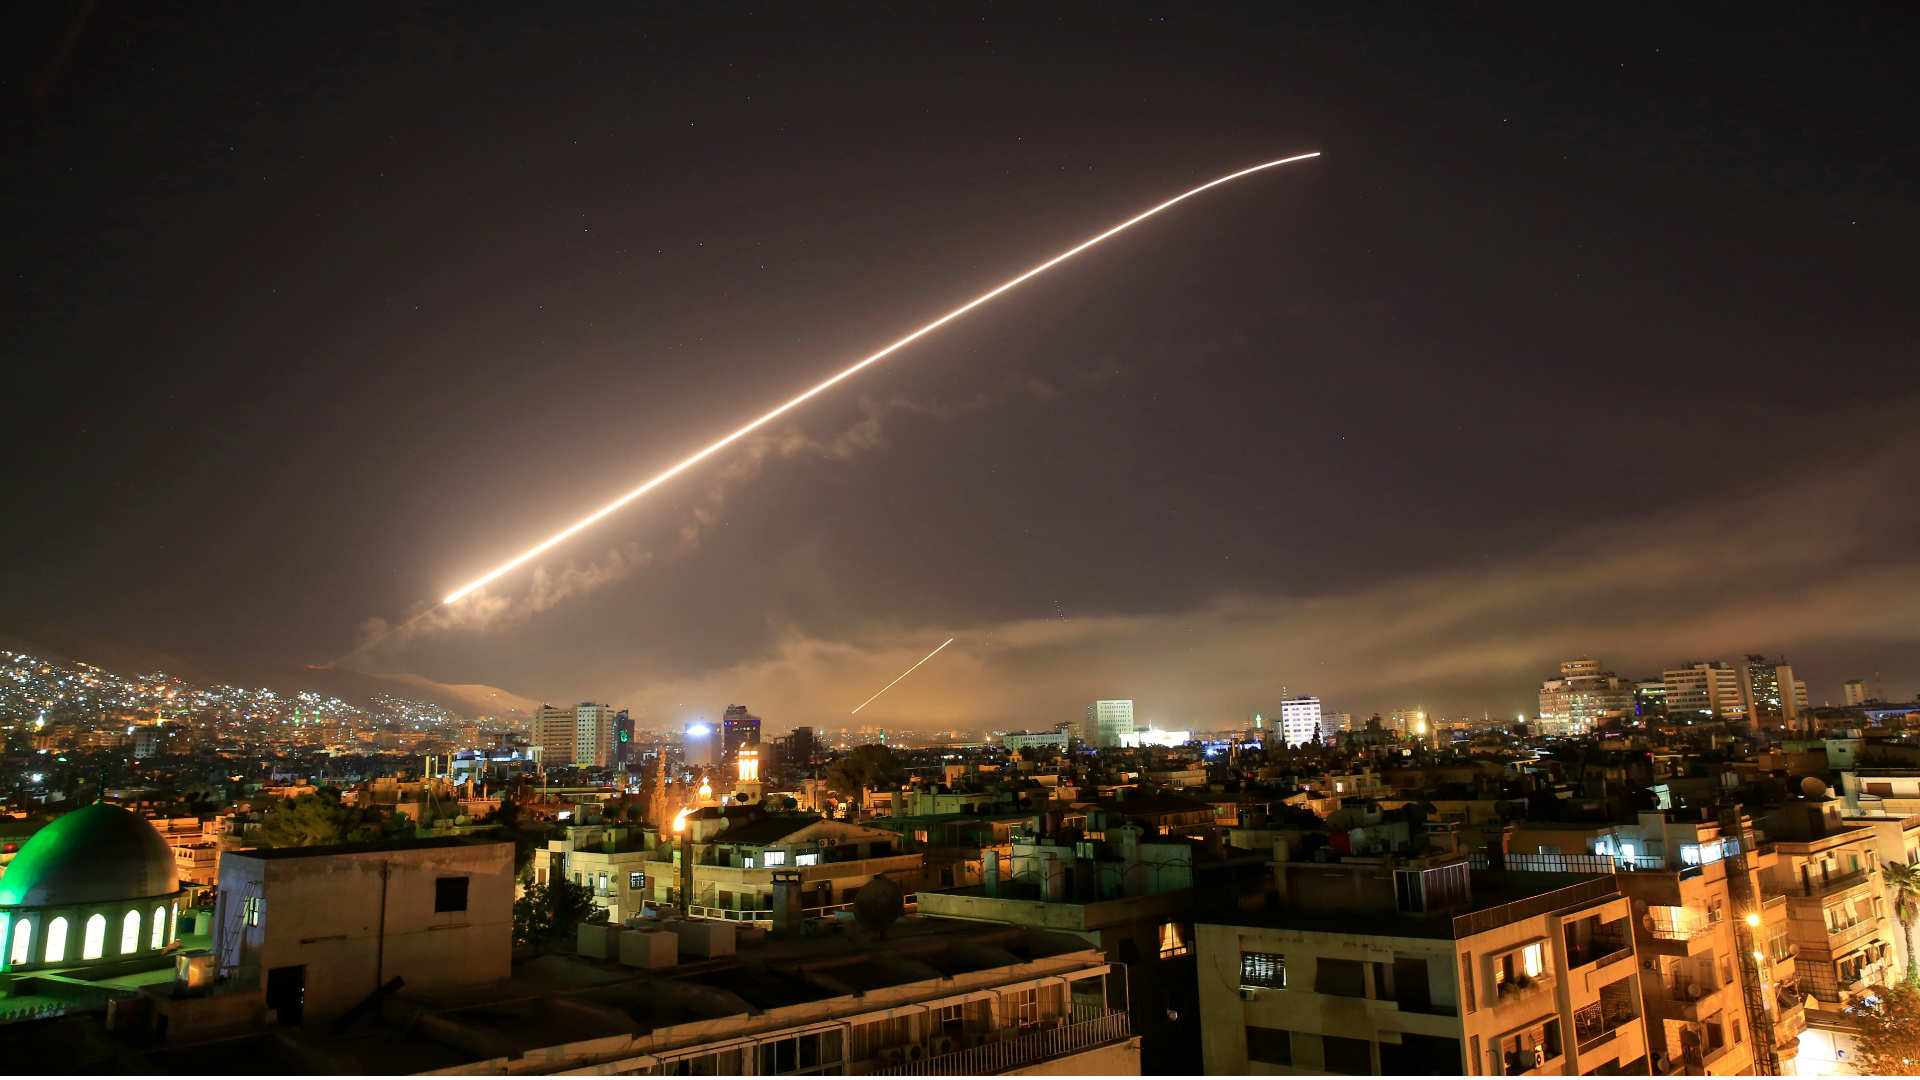 تفاصيل العمليتين العسكريتين الأخيرتين في سوريا.. "أمريكا والأردن" أجنحة صهيونيّة قامت بضربات جوّيّة + صور